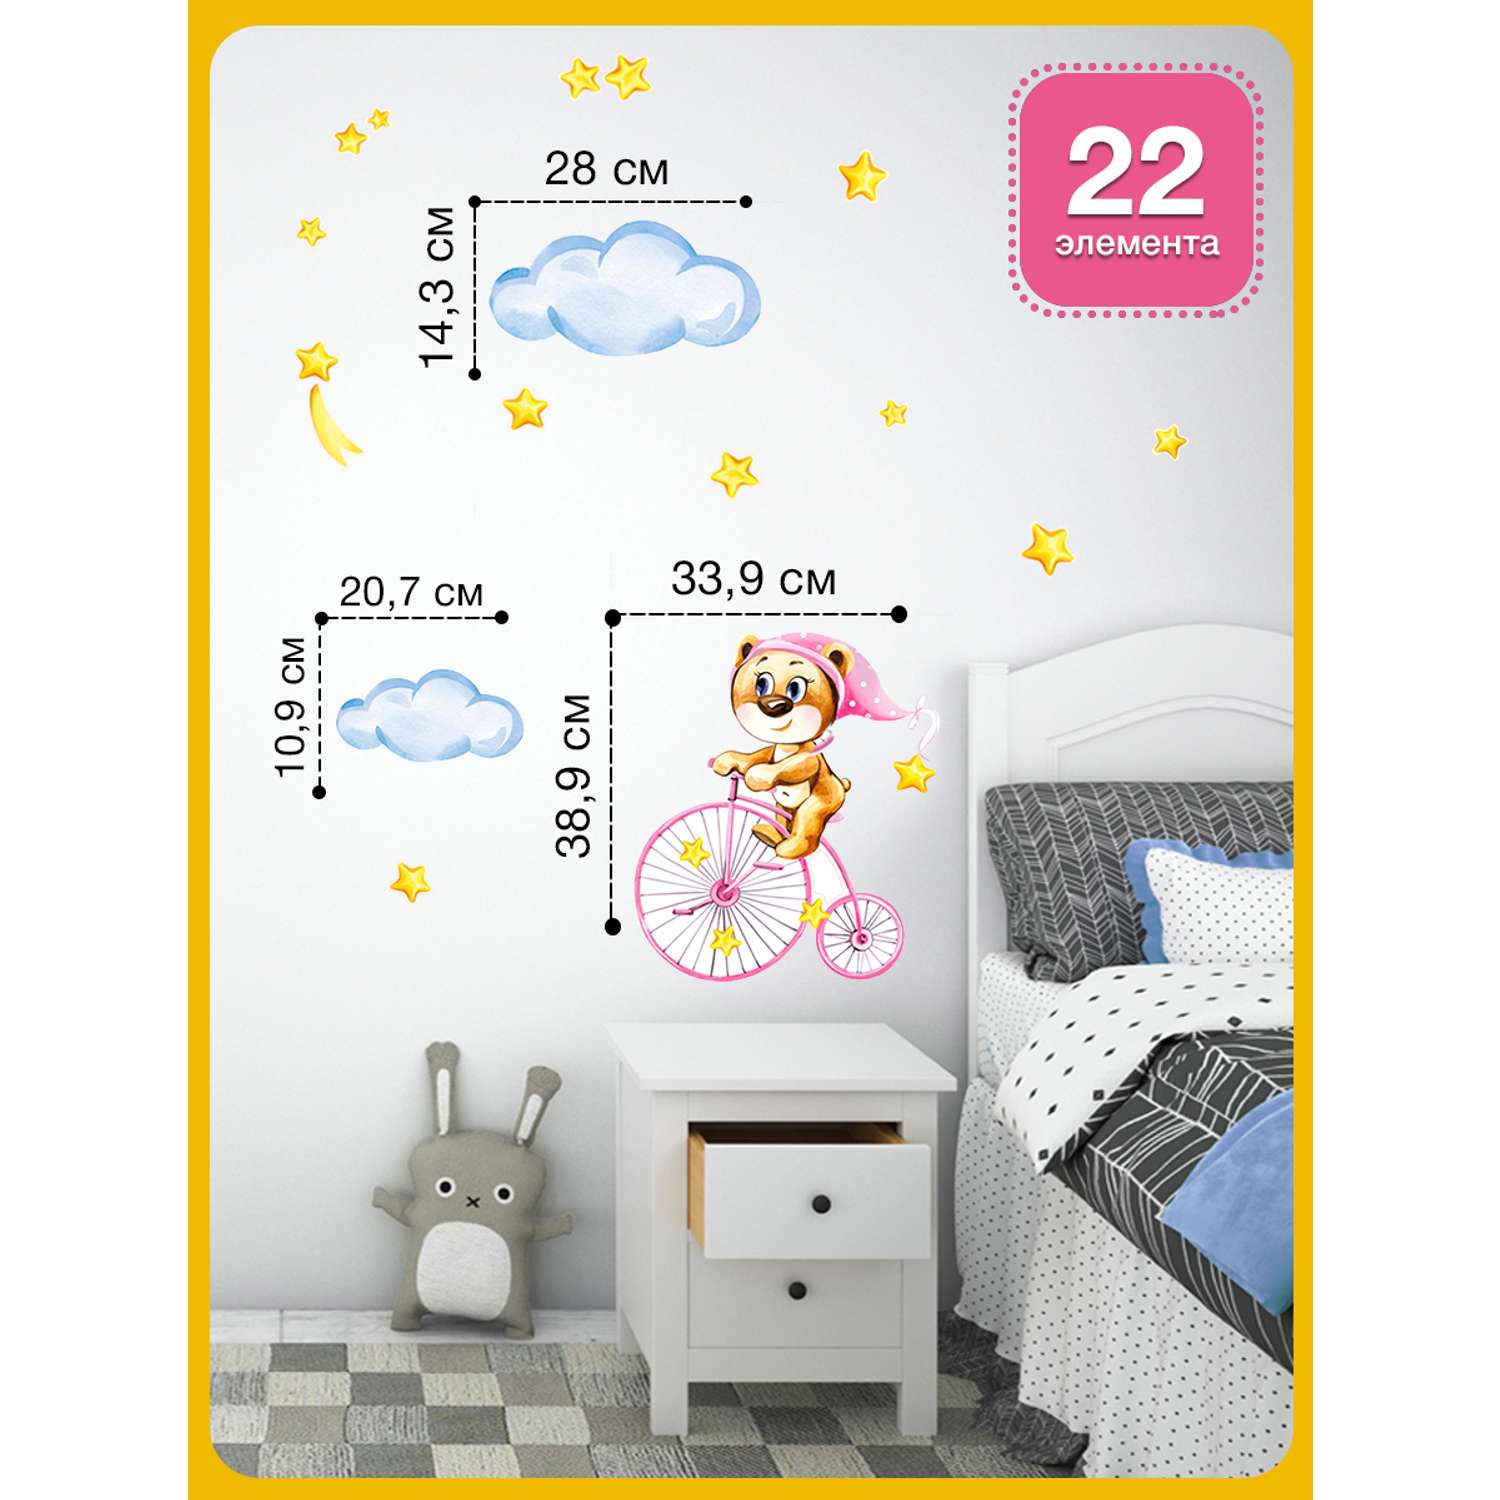 Наклейка оформительская ГК Горчаков в детскую комнату дочке с рисунком мишка для декора - фото 2